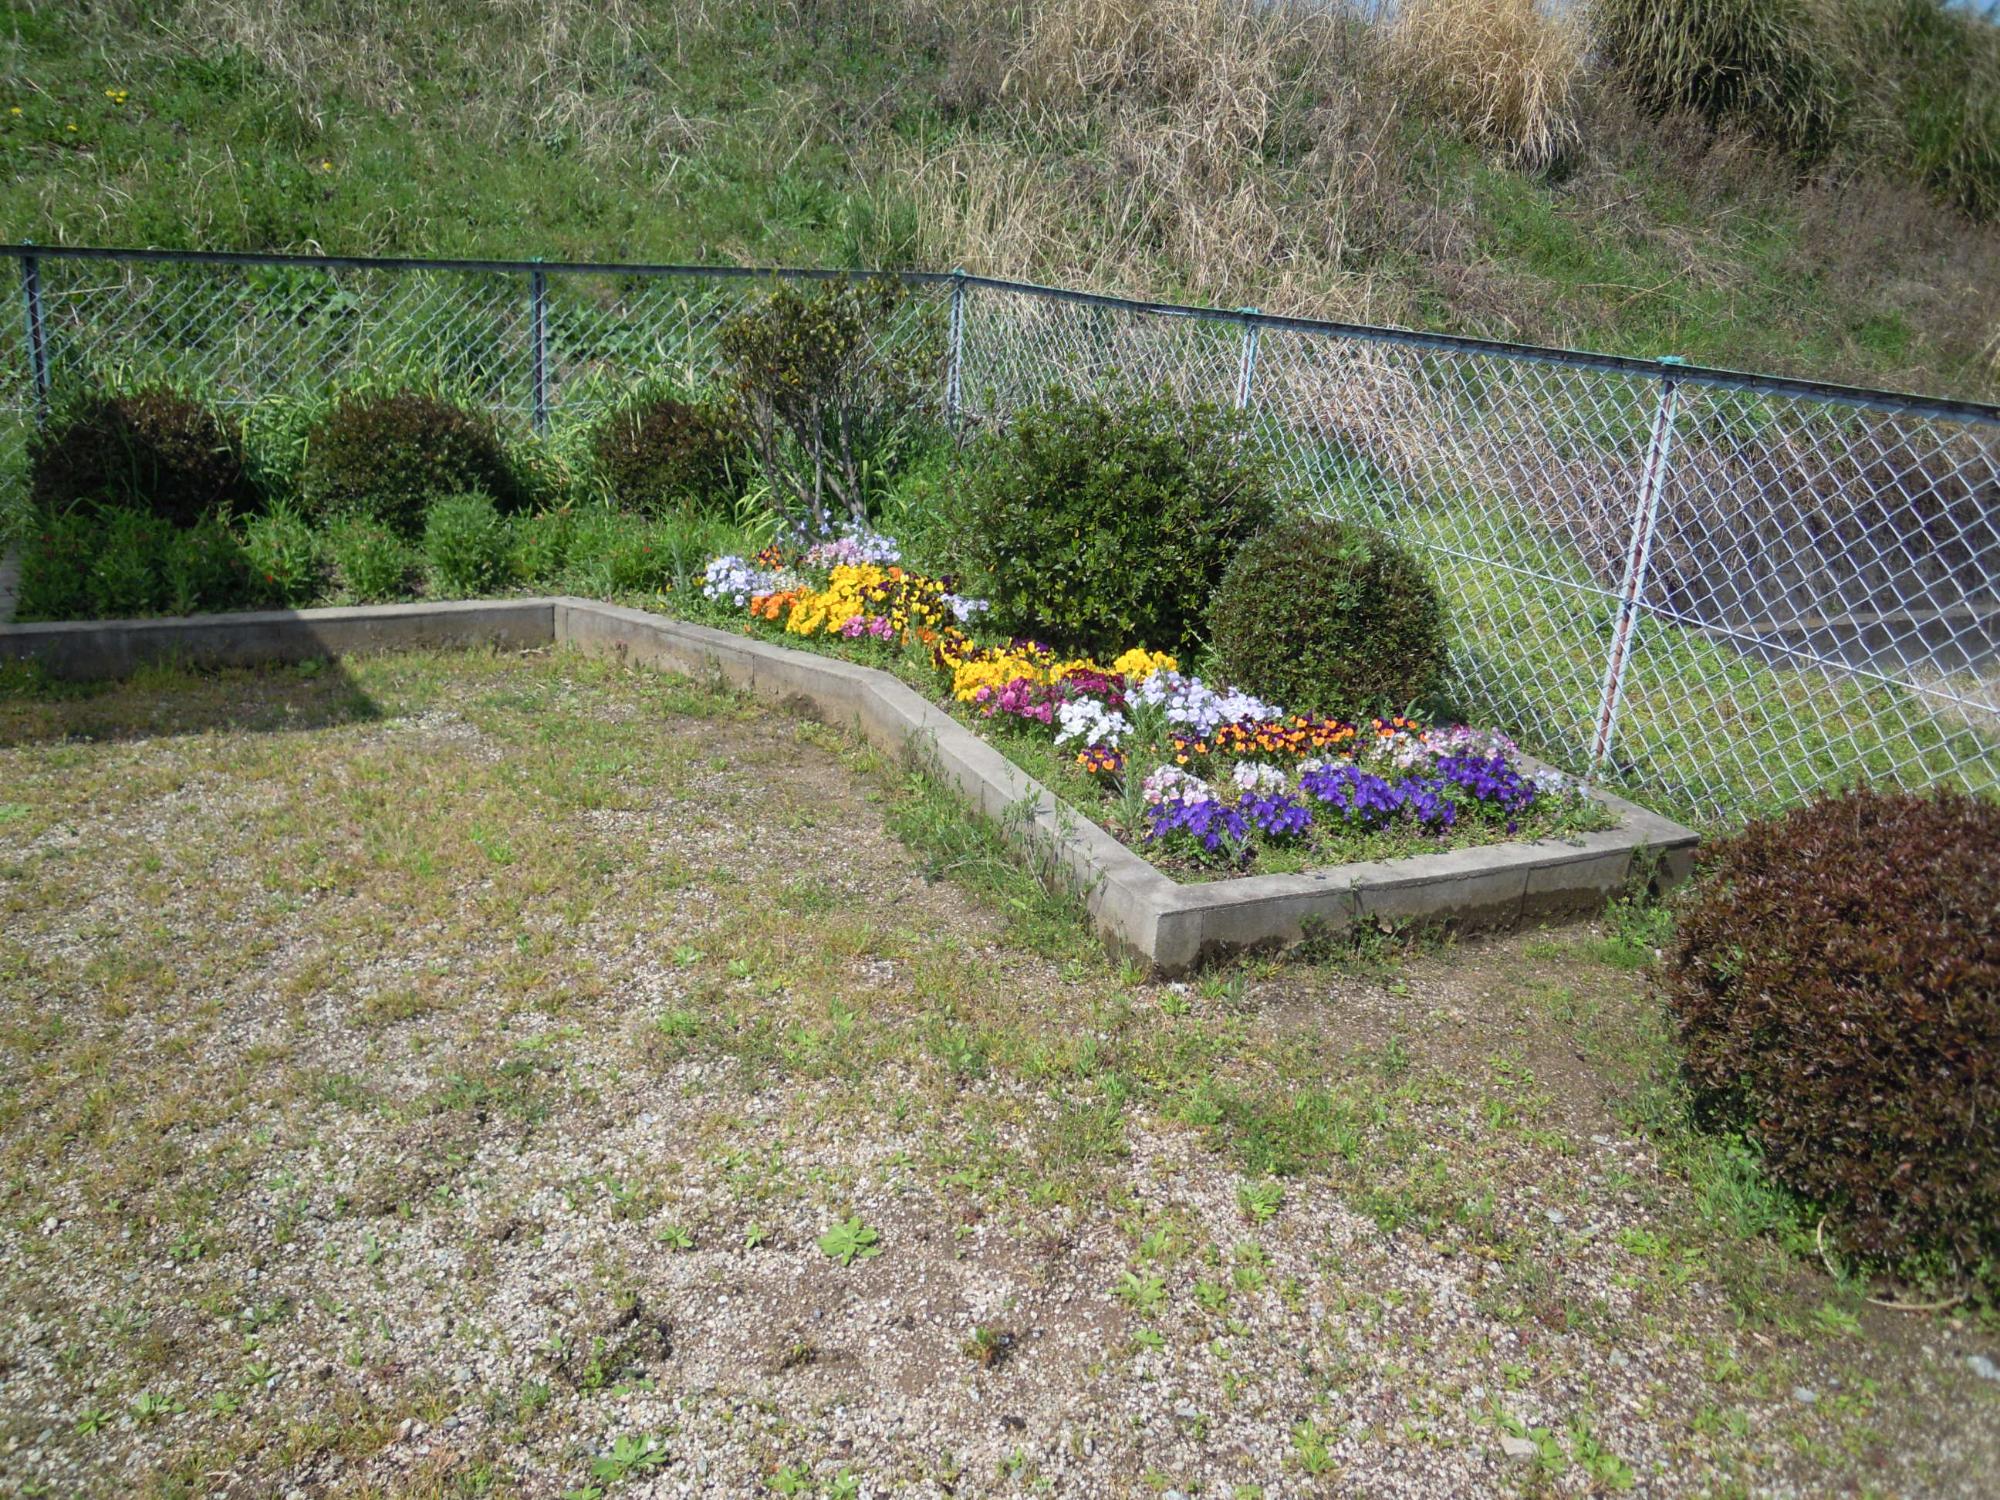 磐余団地児童公園 の北側にある色とりどりの花が咲いている花壇の写真